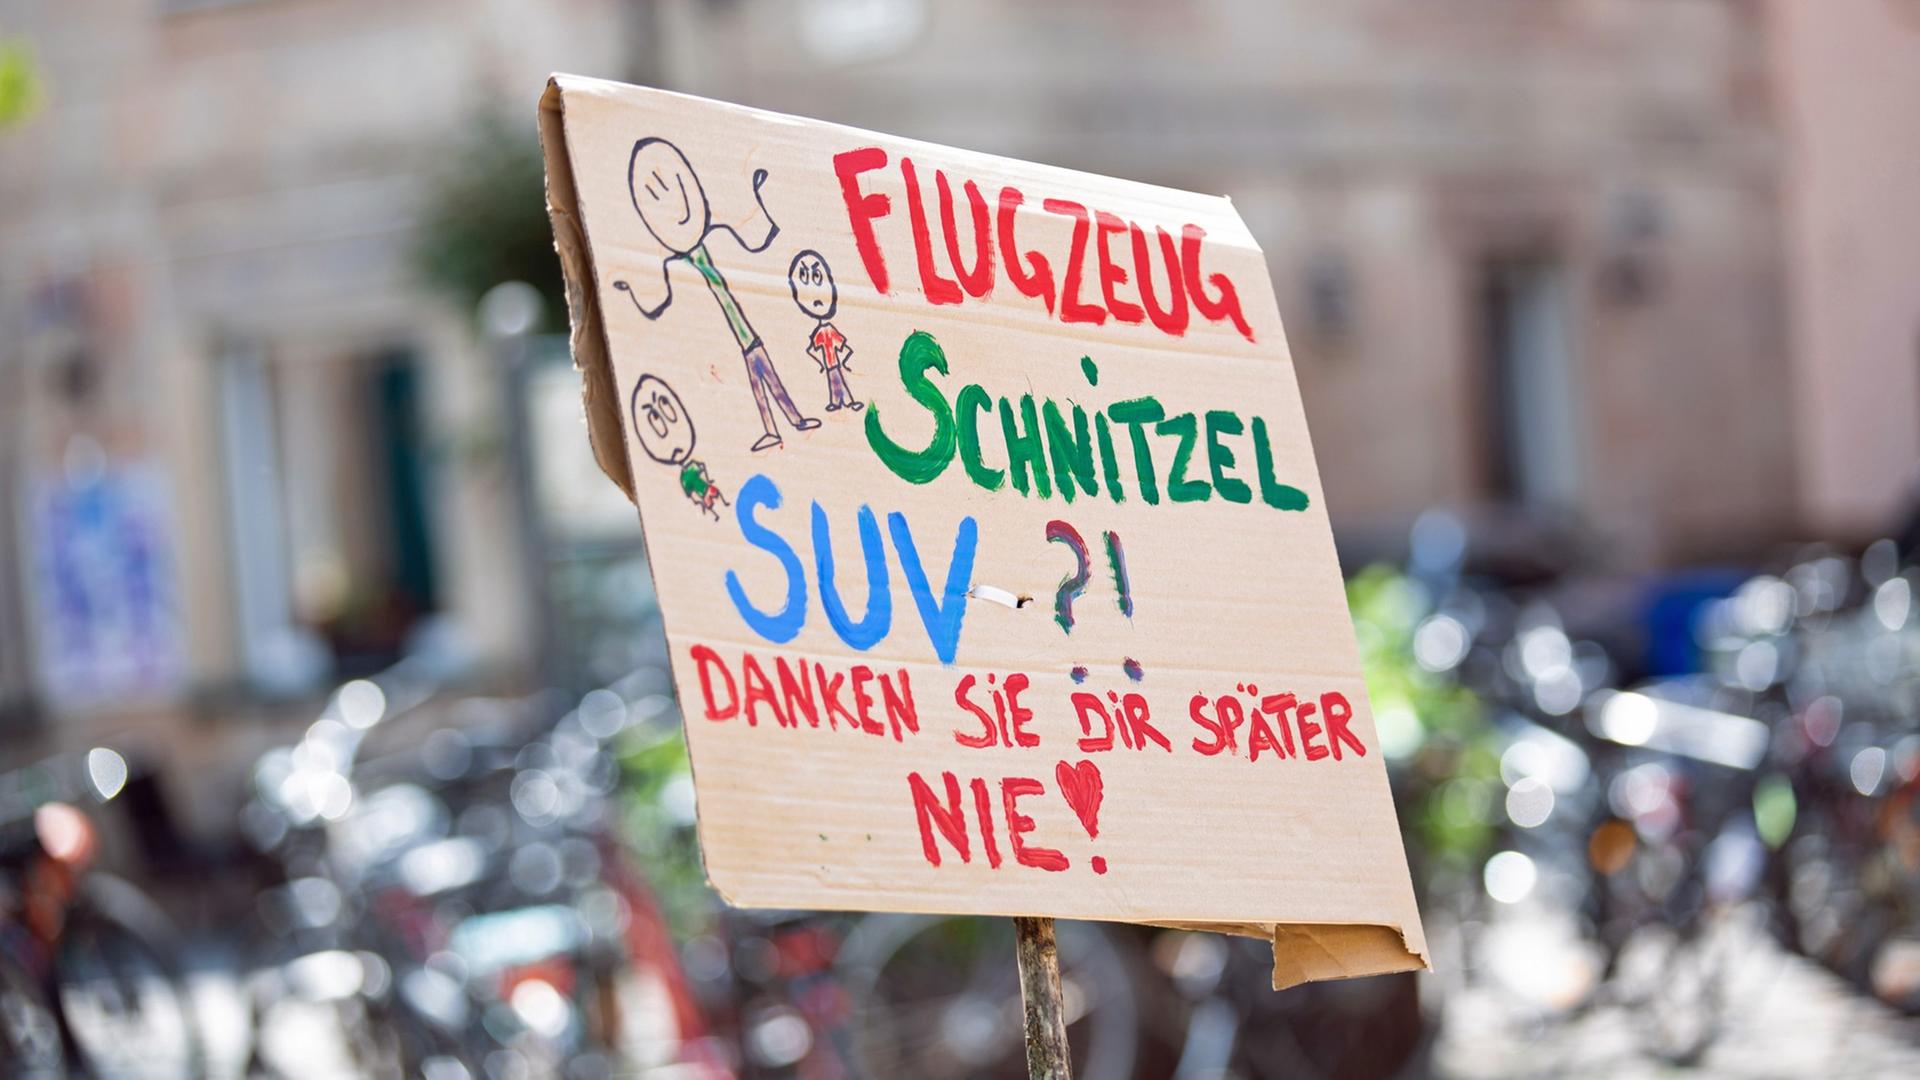 Auf einem Protestschild steht "Flugzeug, Schnitzel, SUV?! Danken sie dir später nie!".